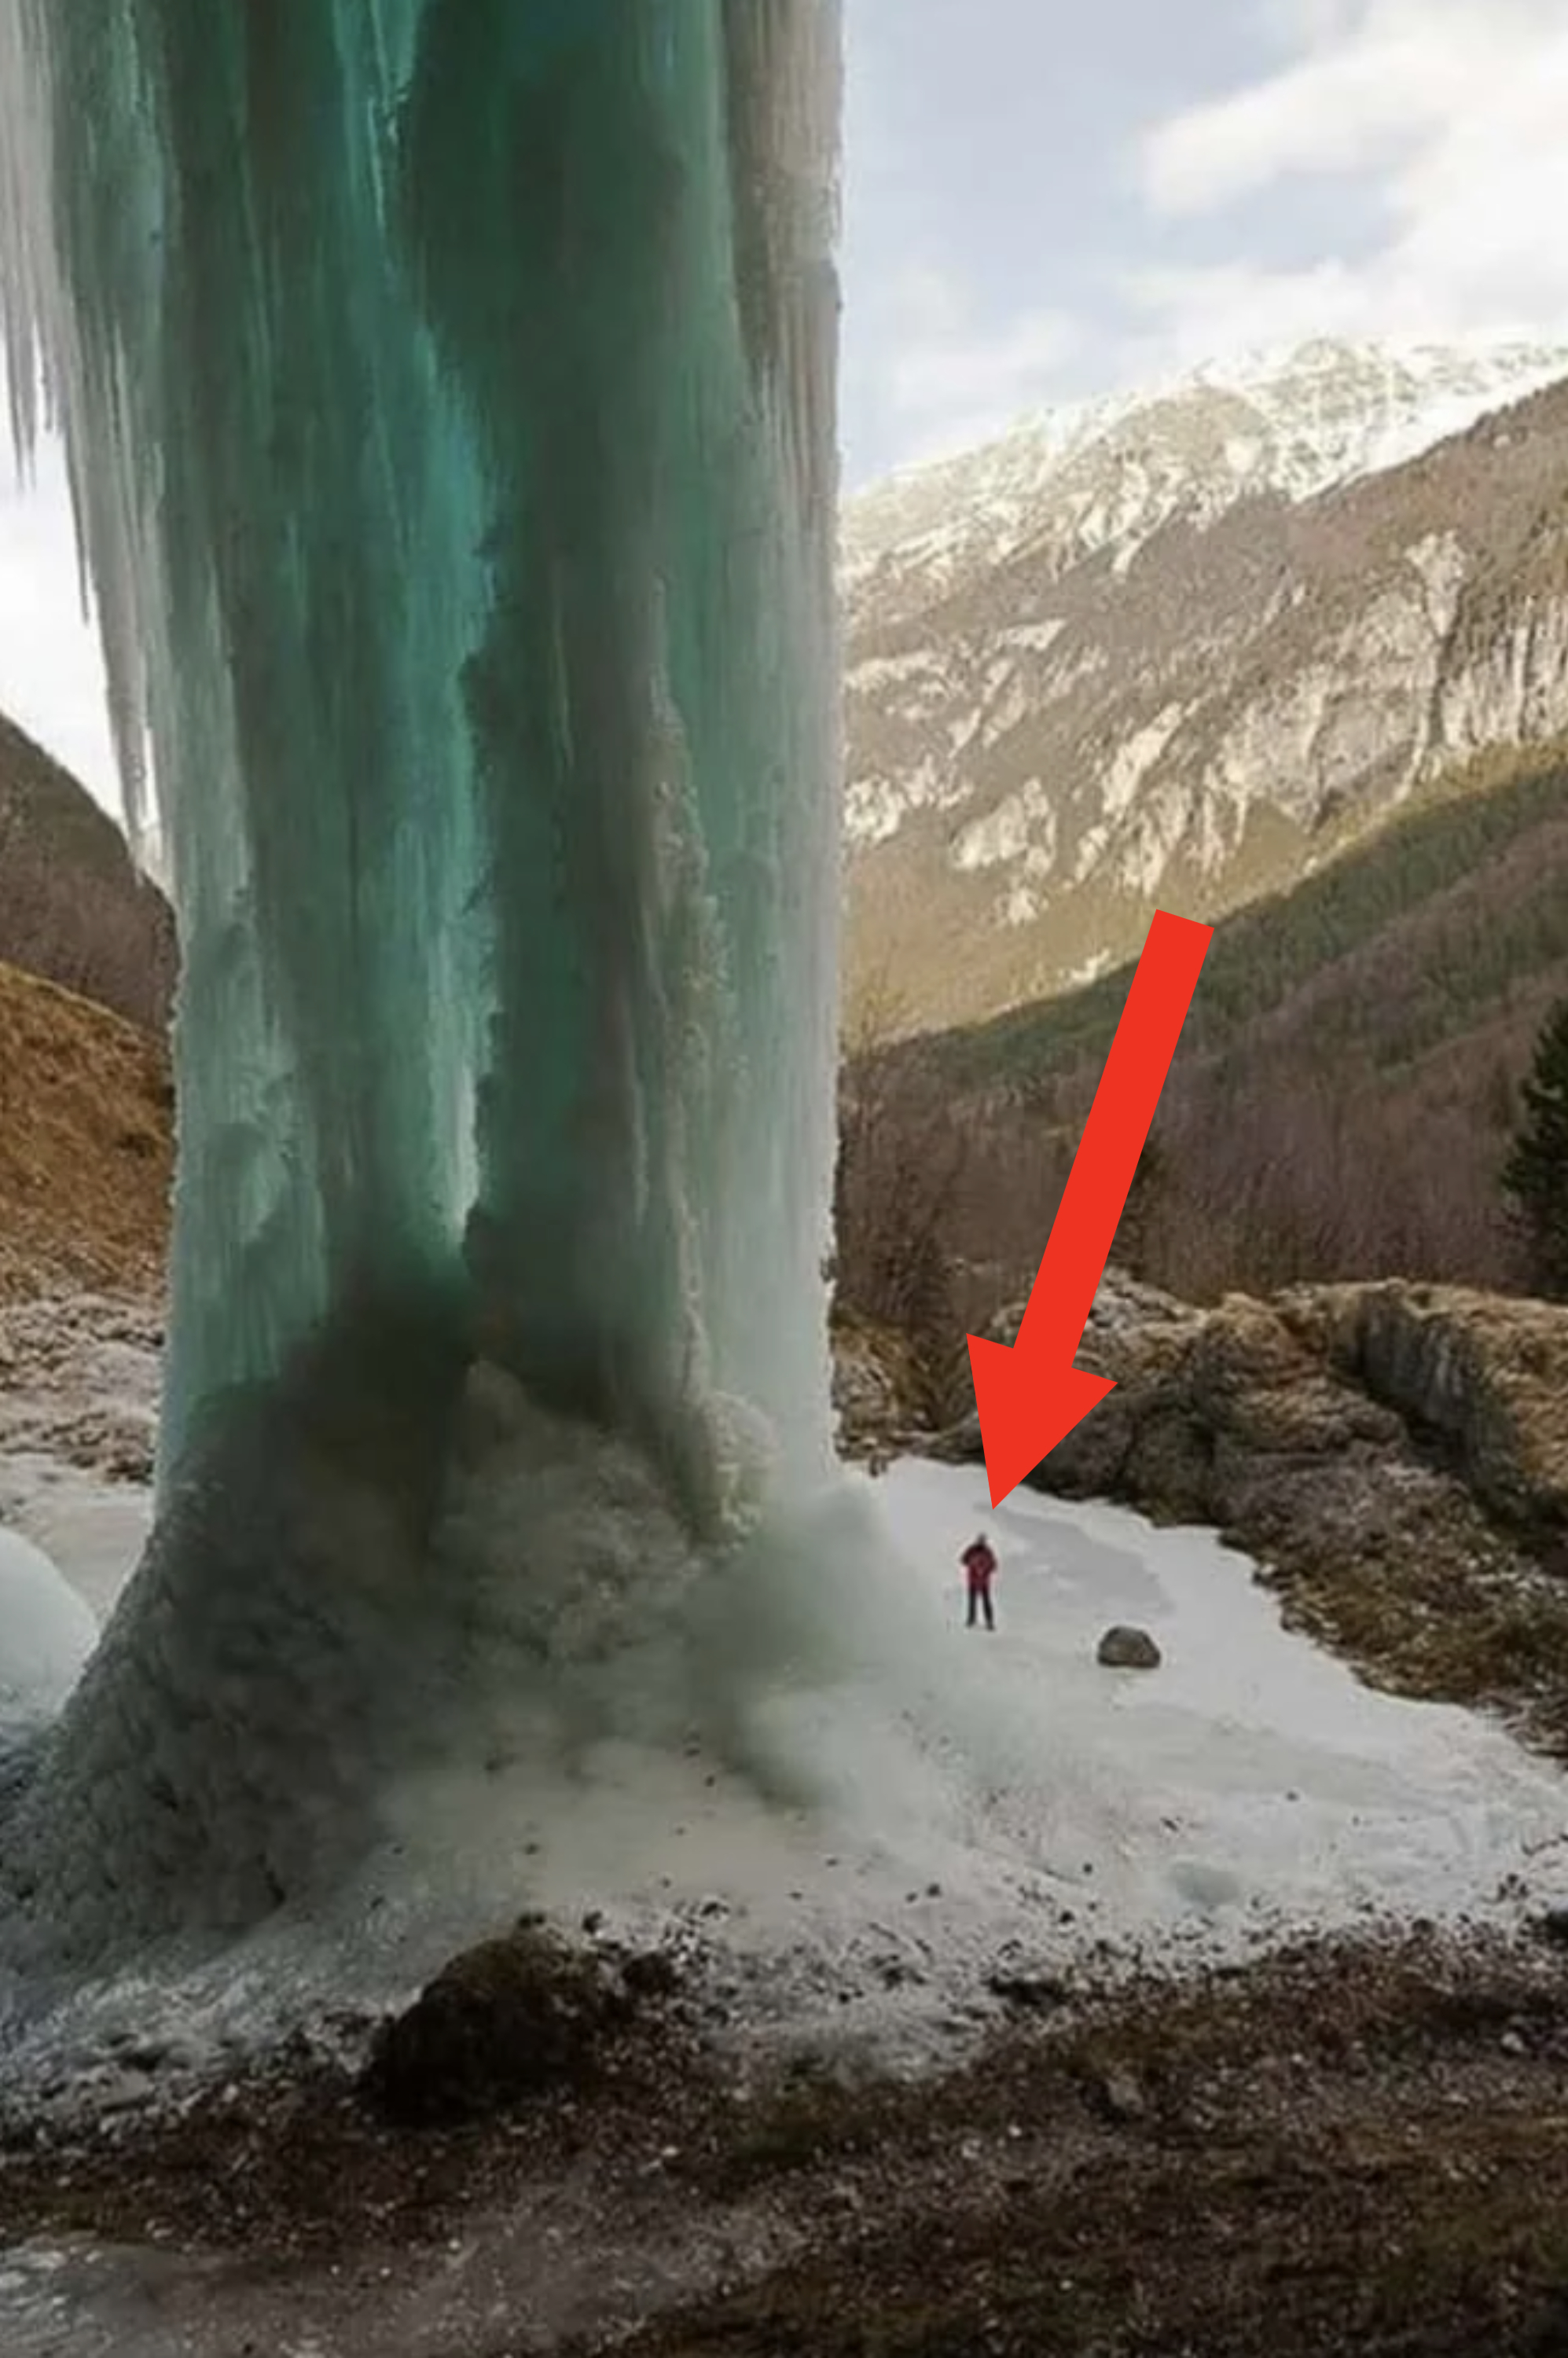 A massive ice fall